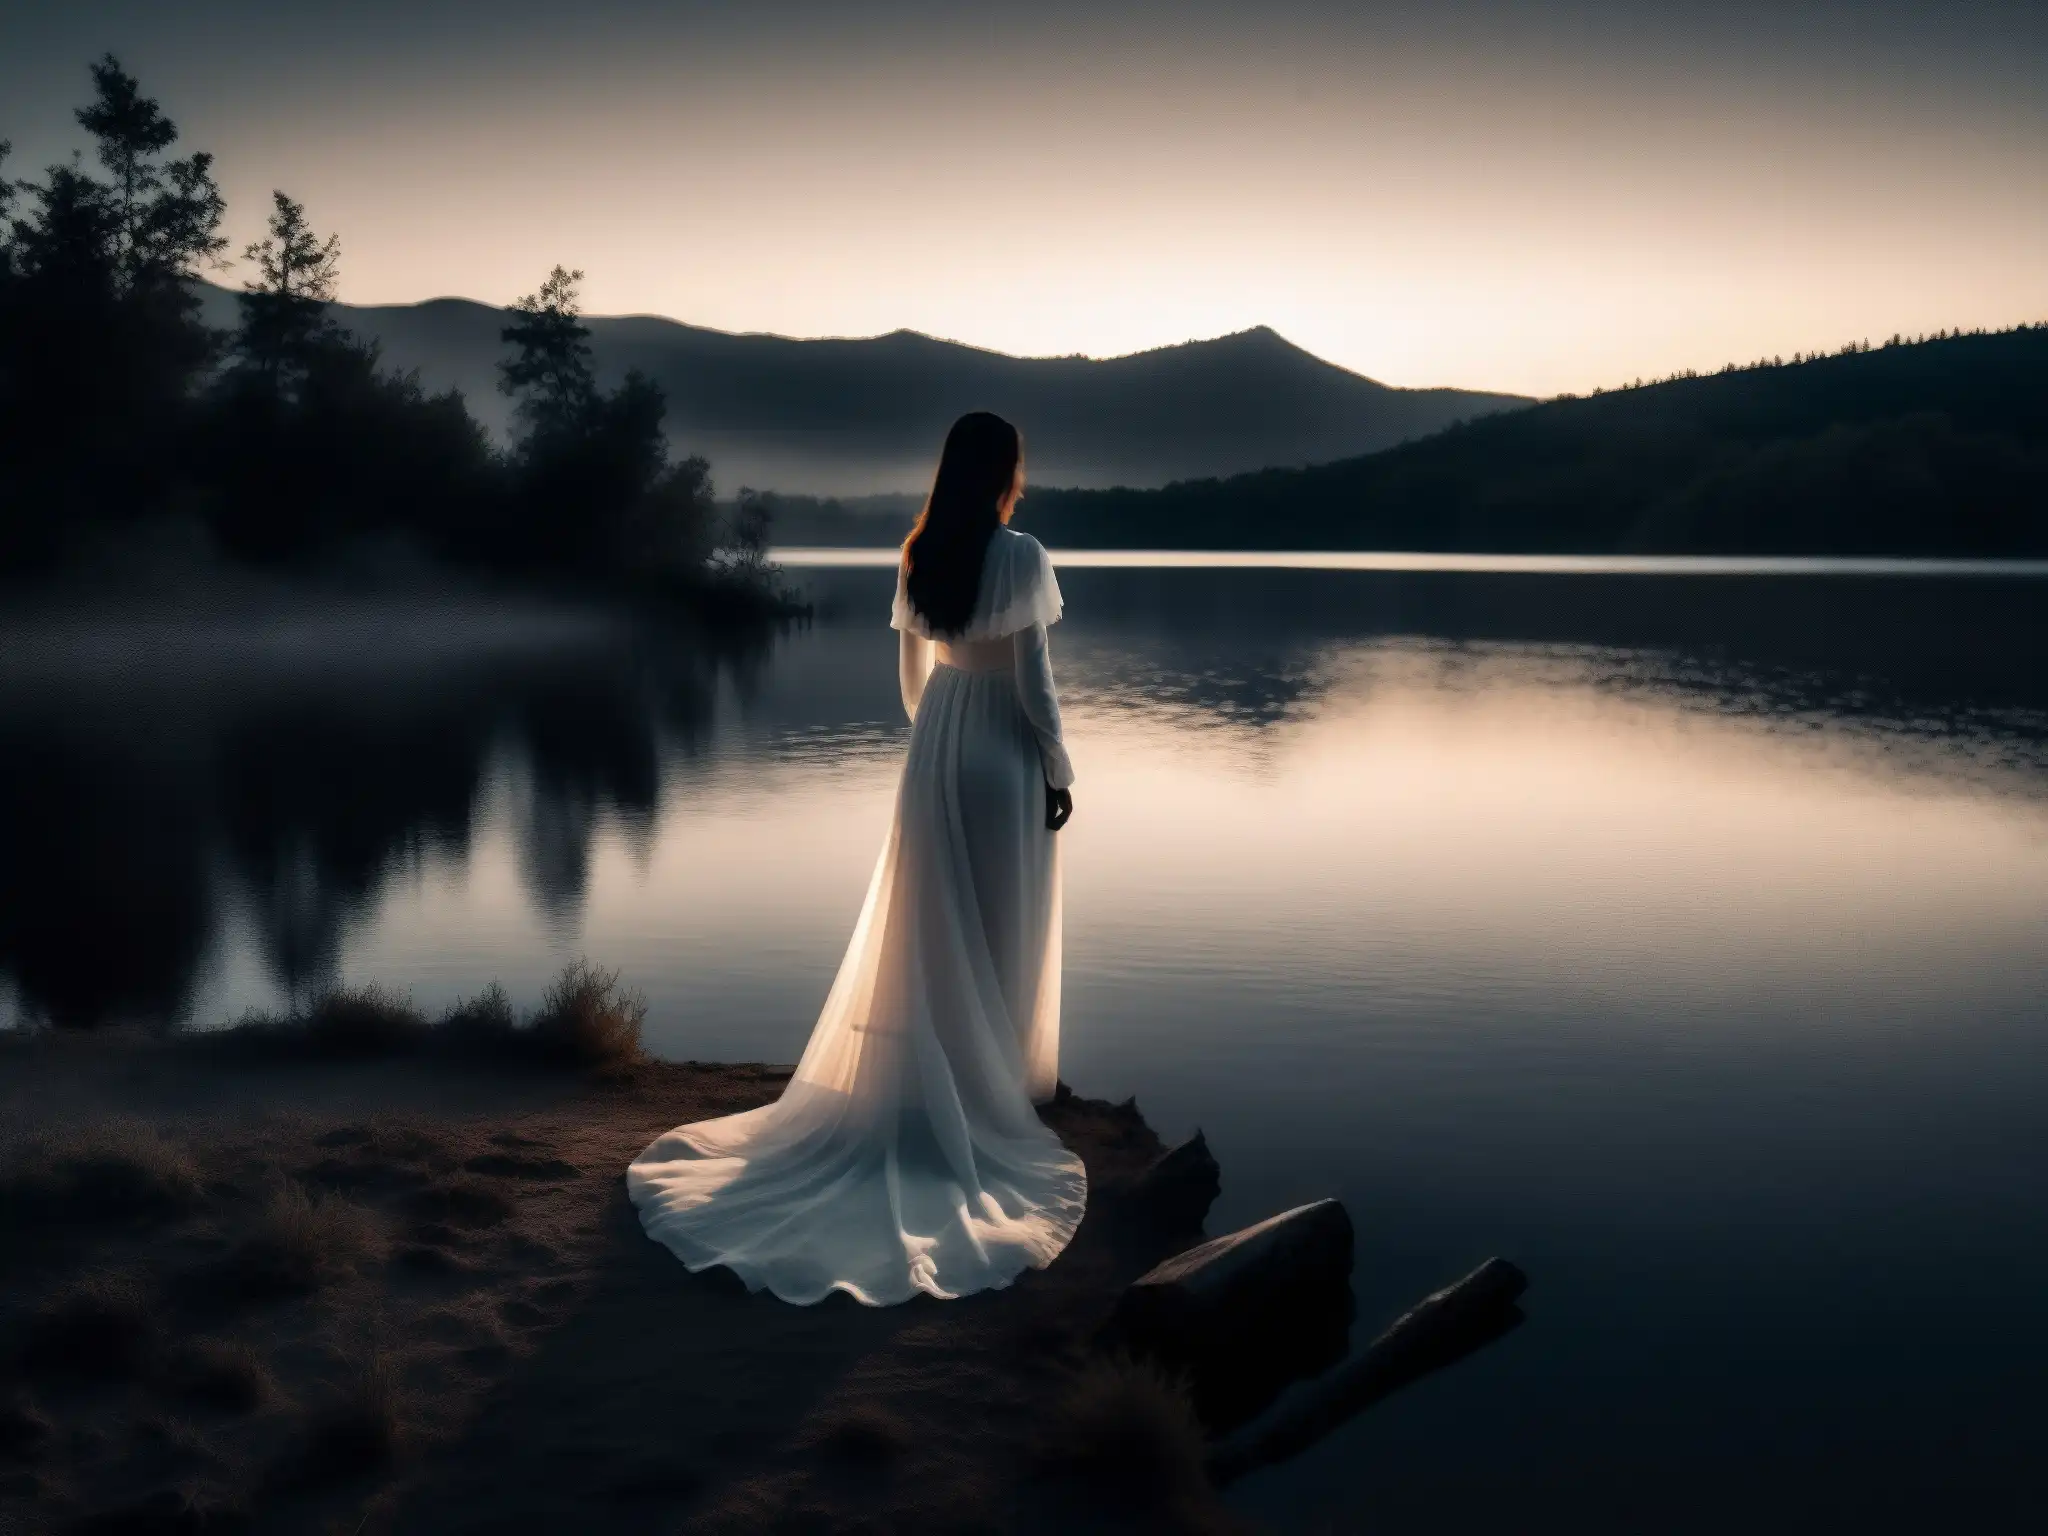 Imagen impactante del misterio de la Llorona en un lago brumoso al anochecer, con una figura sombría y el perfil de una mujer en vestido blanco